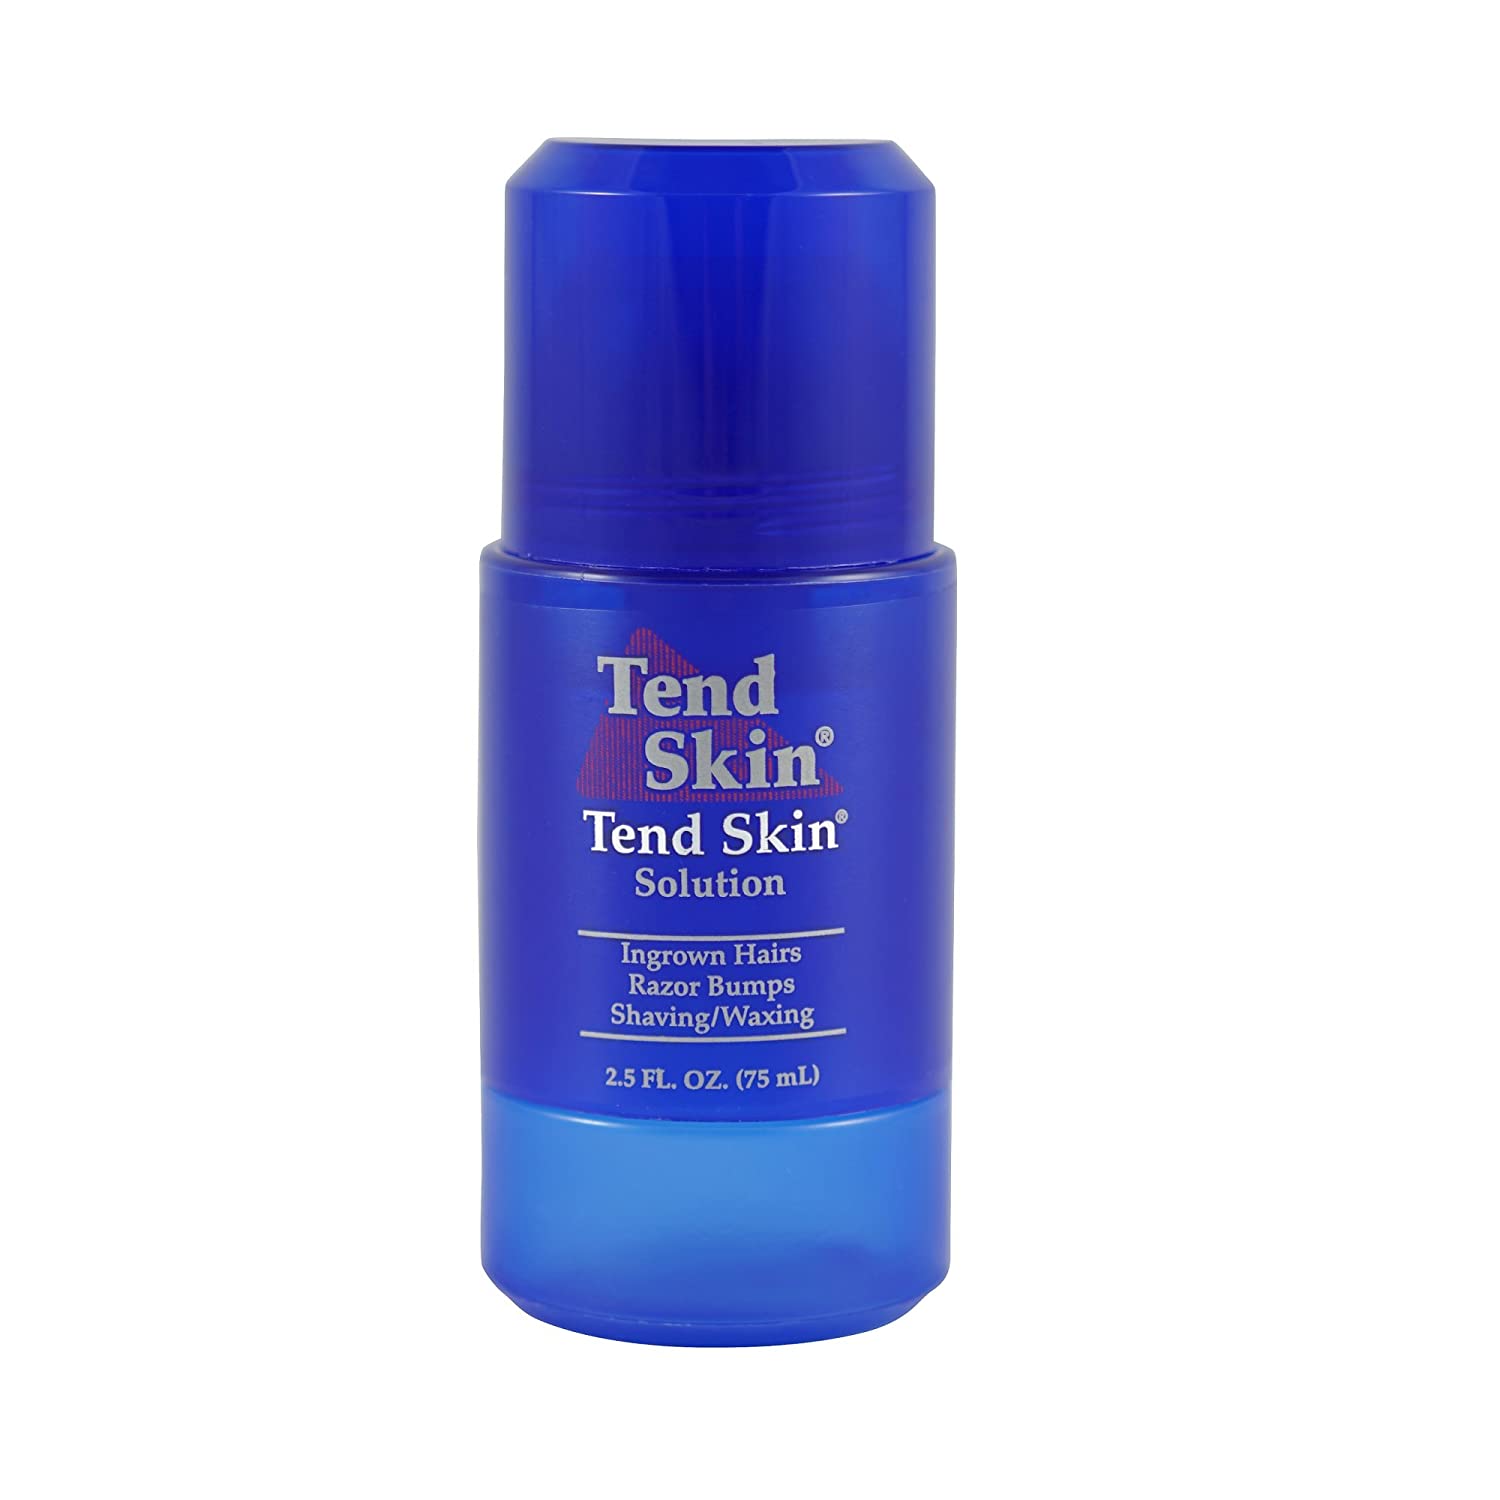 Tendskin Tend skin solution Reviews